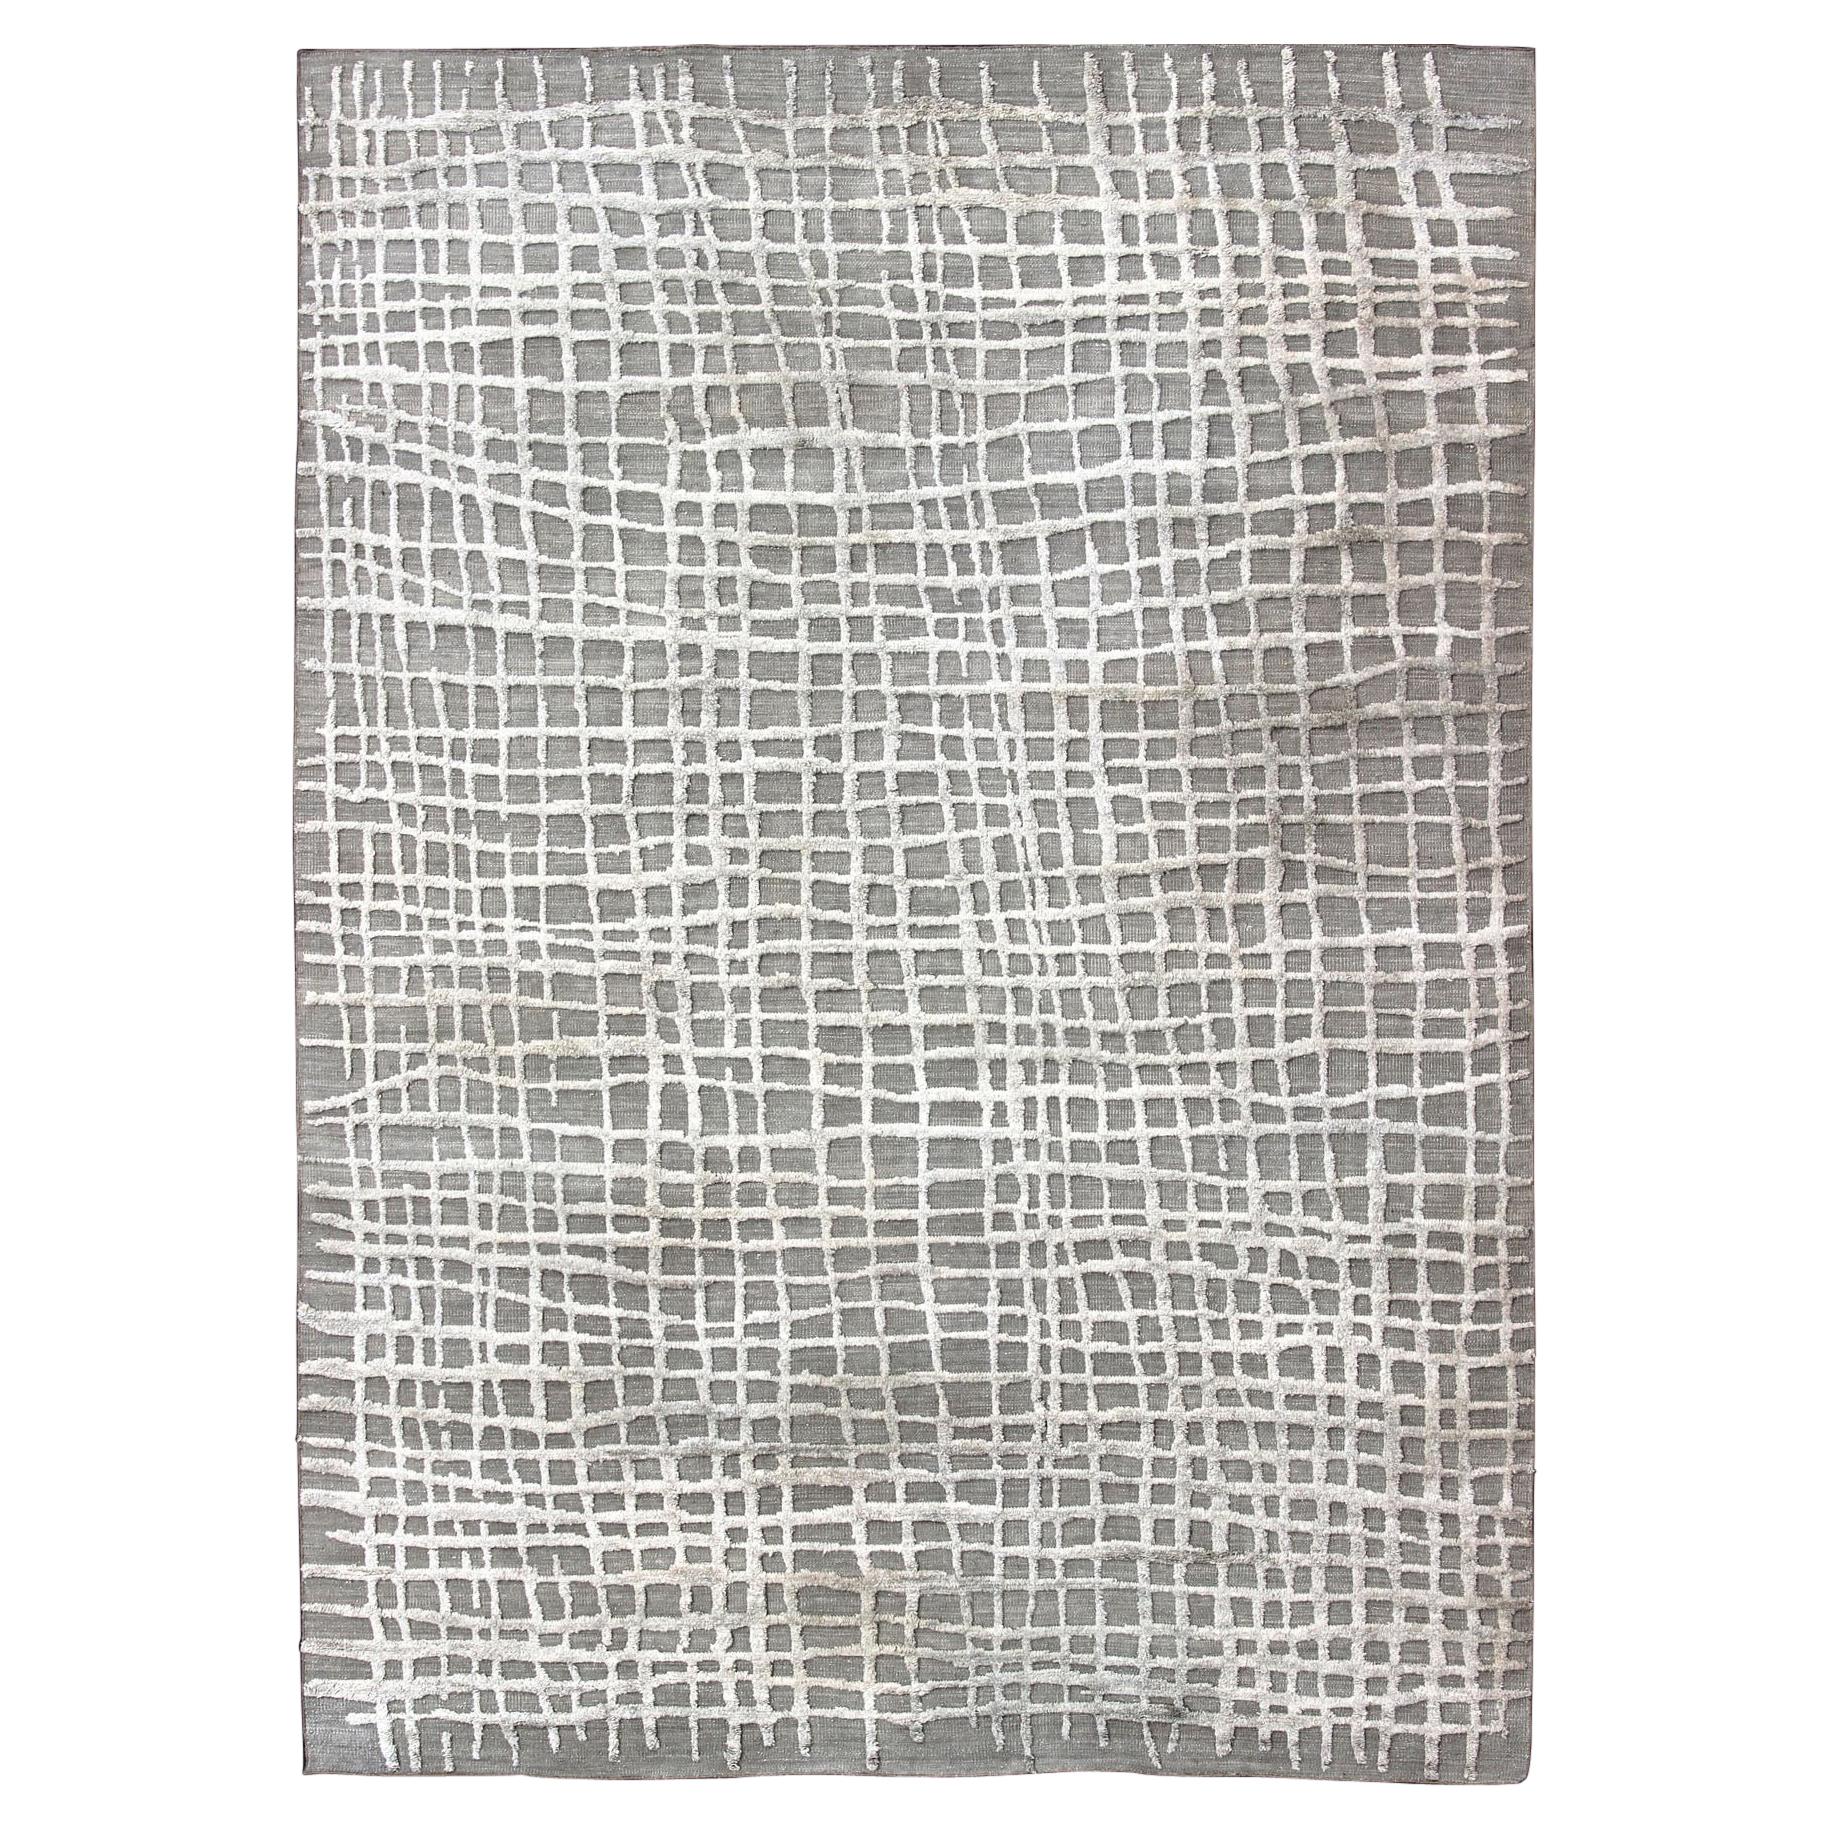 Grand tapis moderne à texture très forte dans un design minimaliste avec des motifs taupe et blanc